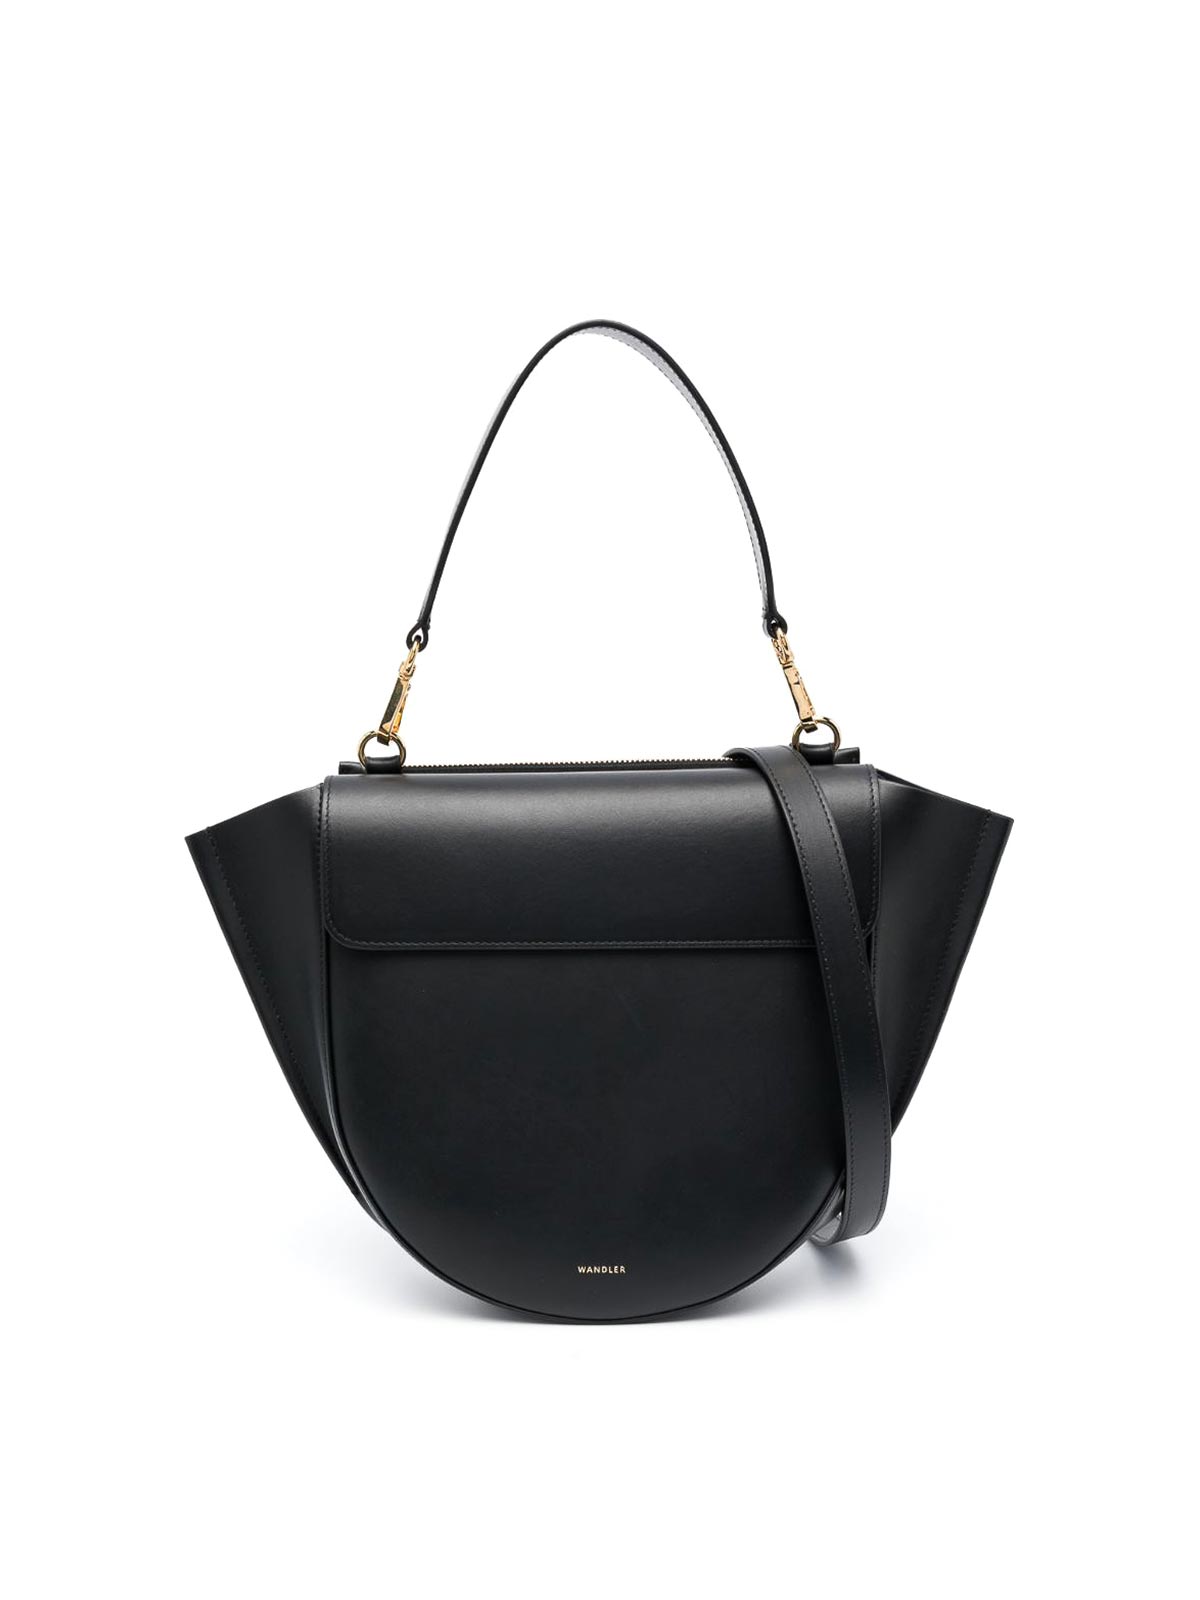 Wandler Medium Hortensia Bag In Black